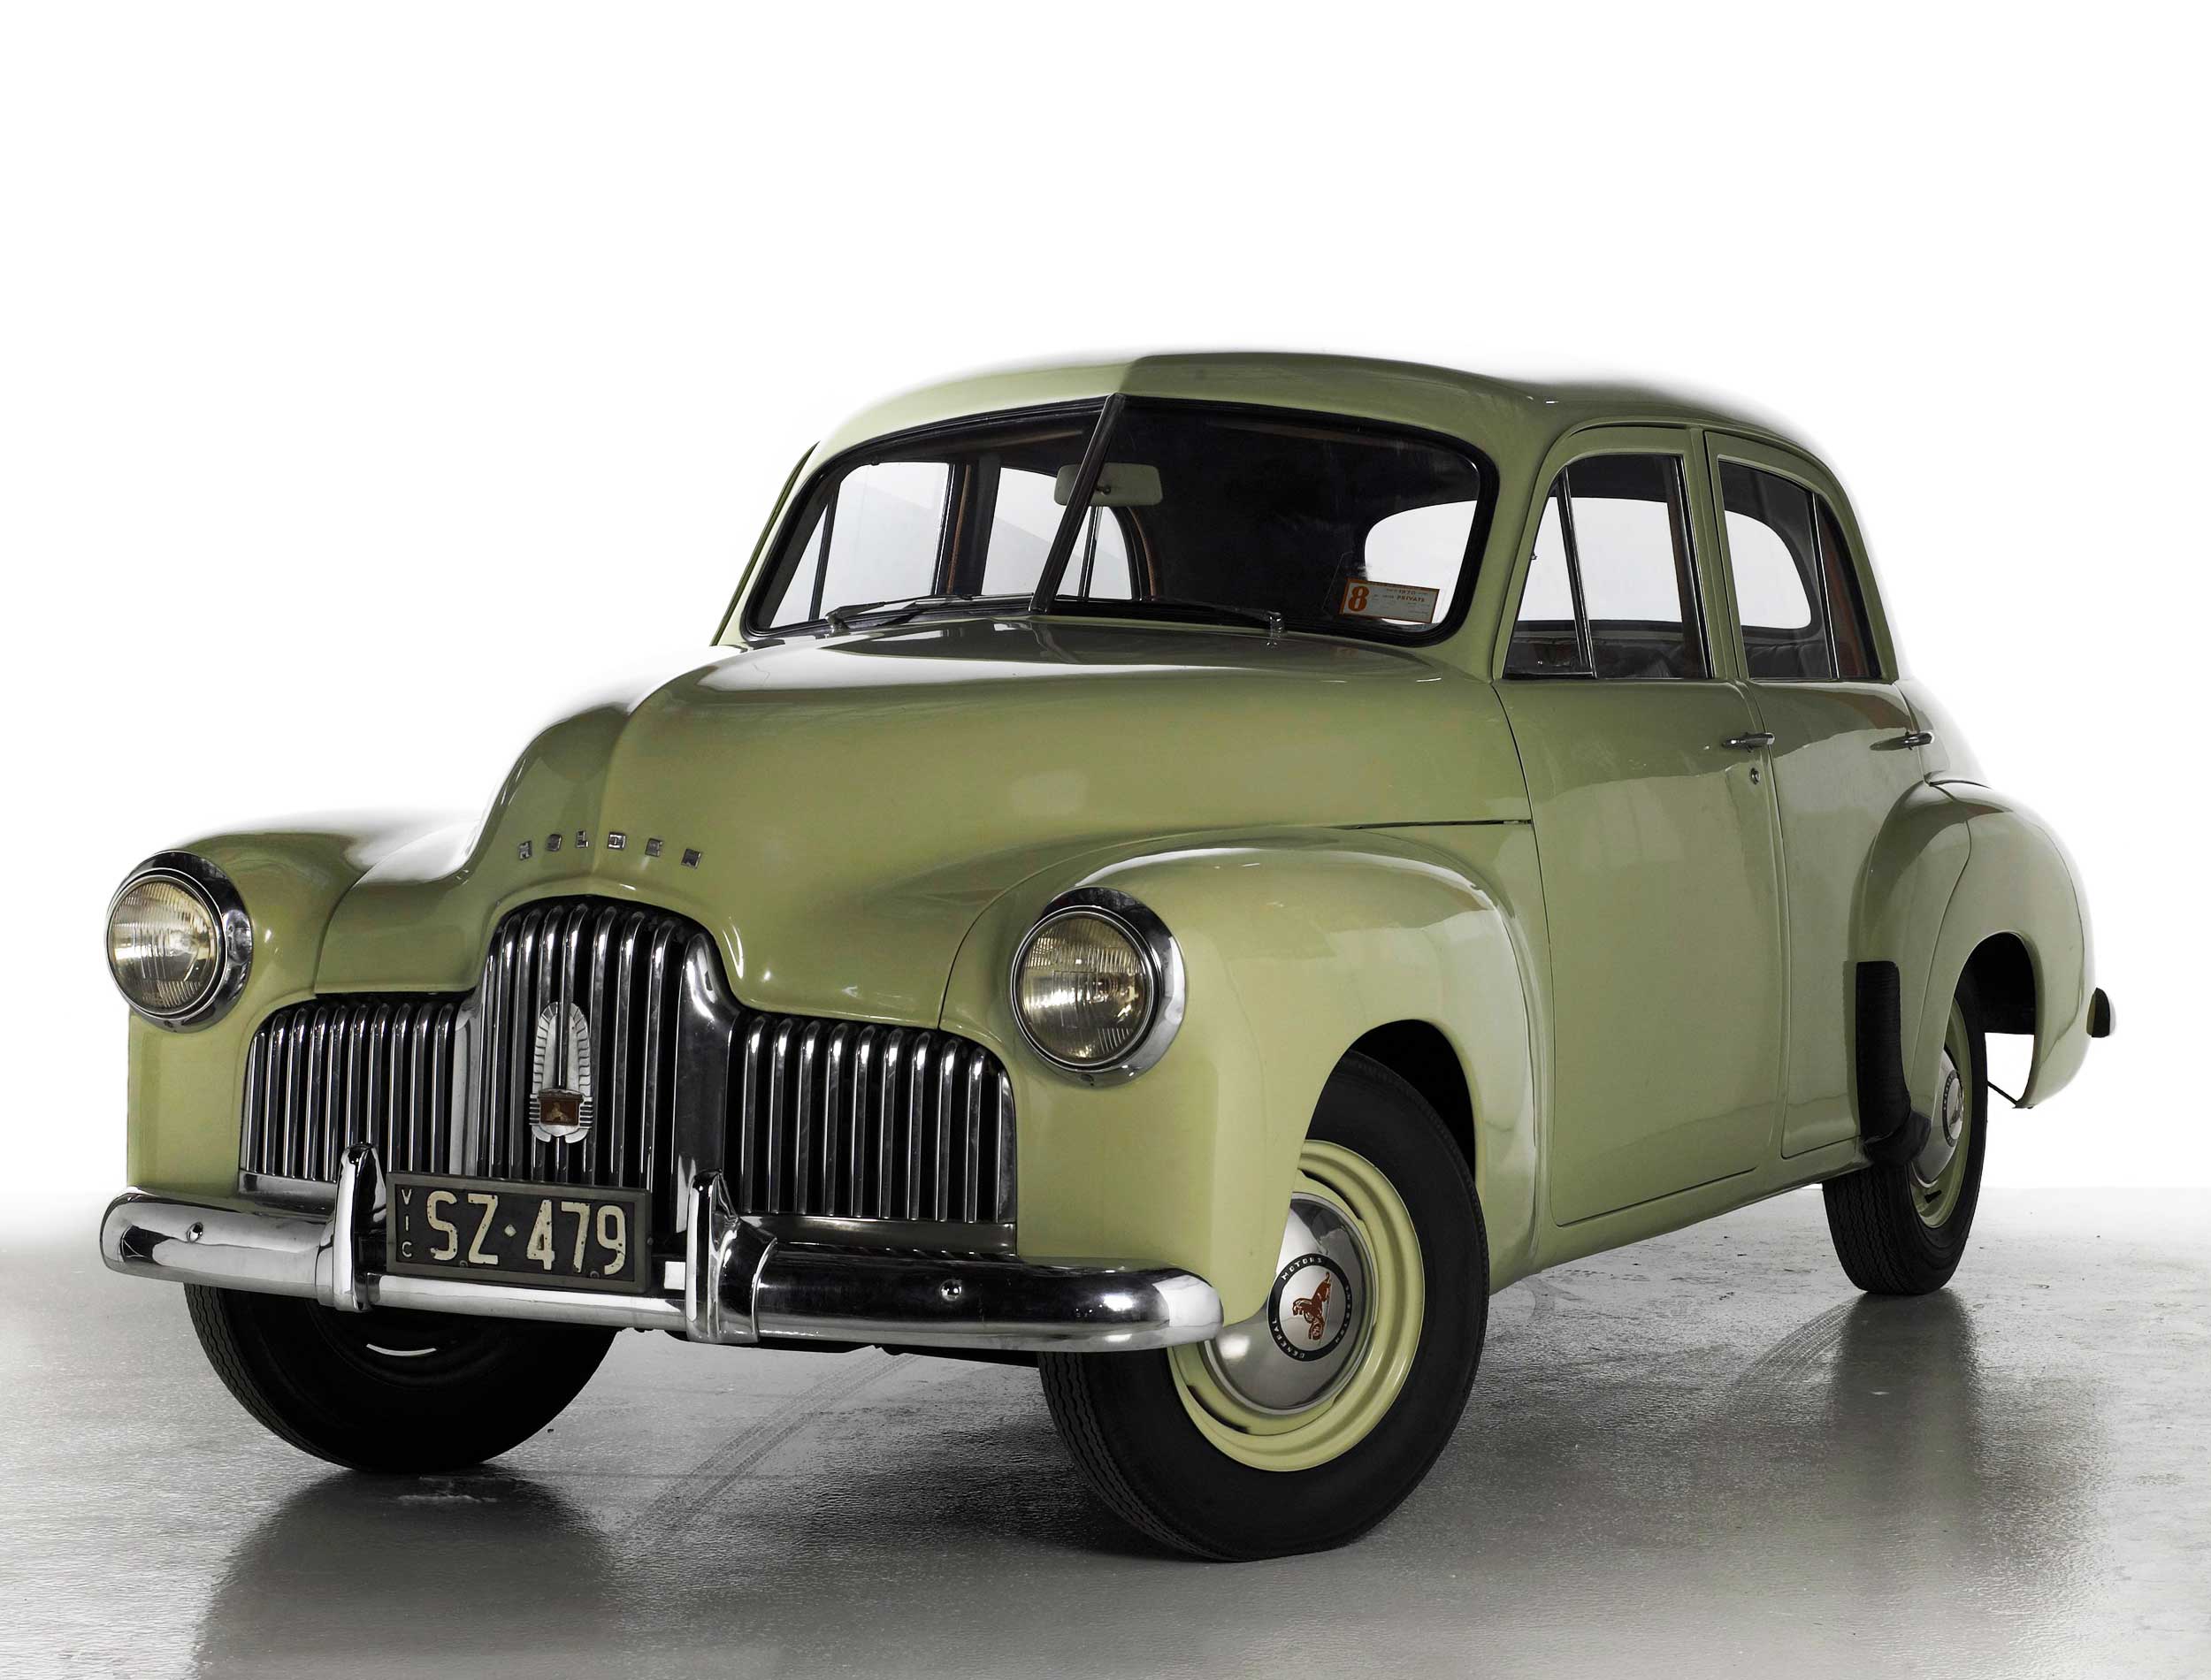 Holden 48-215 Sedan Standard 1948 topruscar 